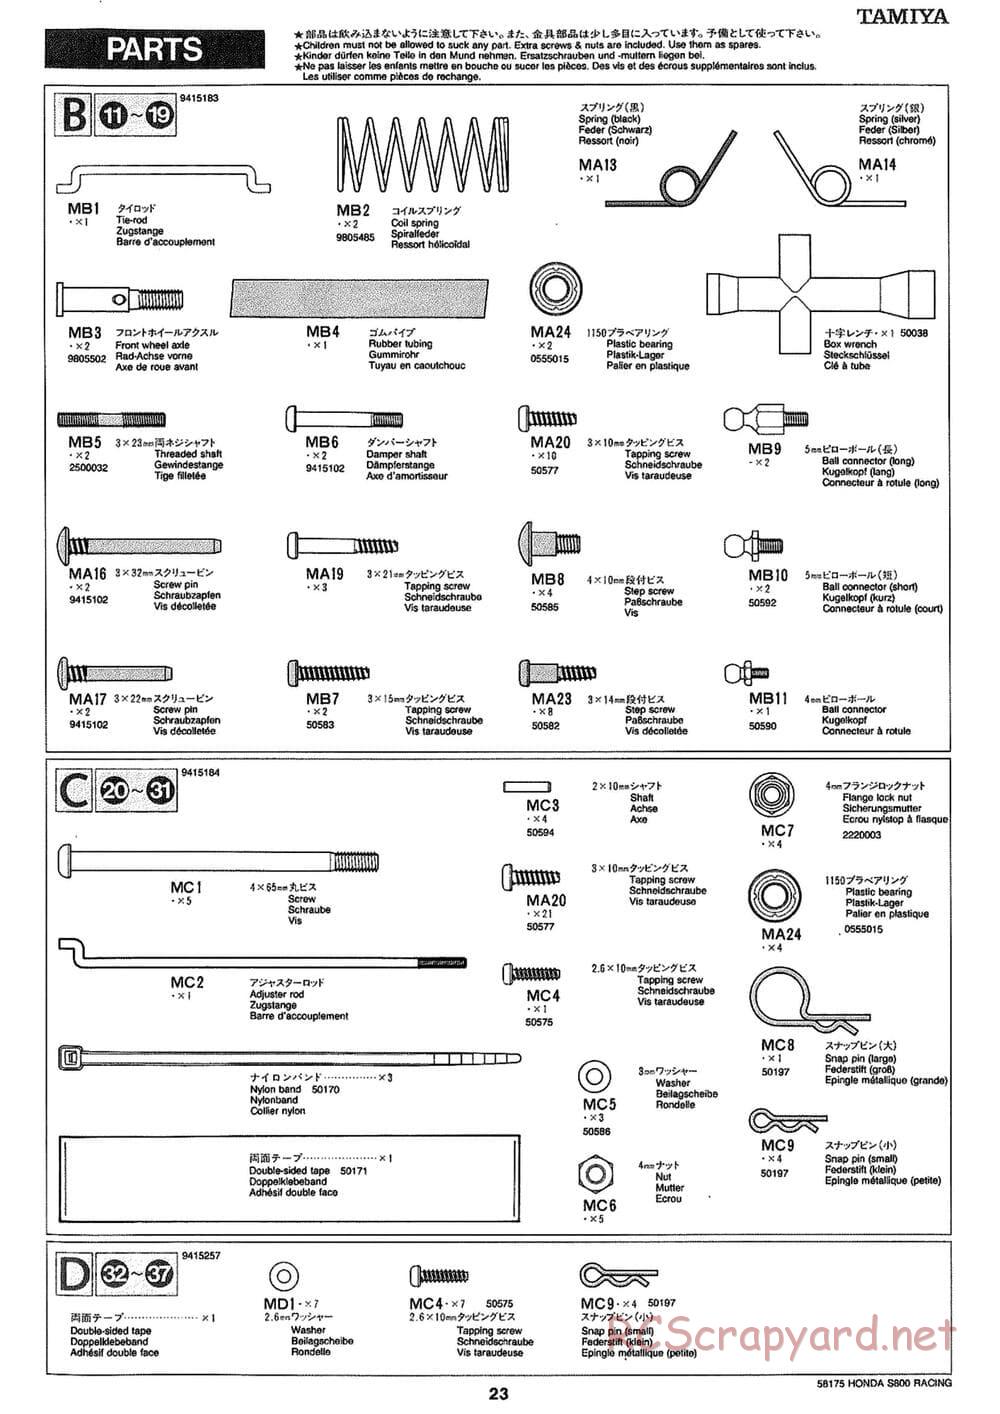 Tamiya - Honda S800 Racing - M02 Chassis - Manual - Page 23